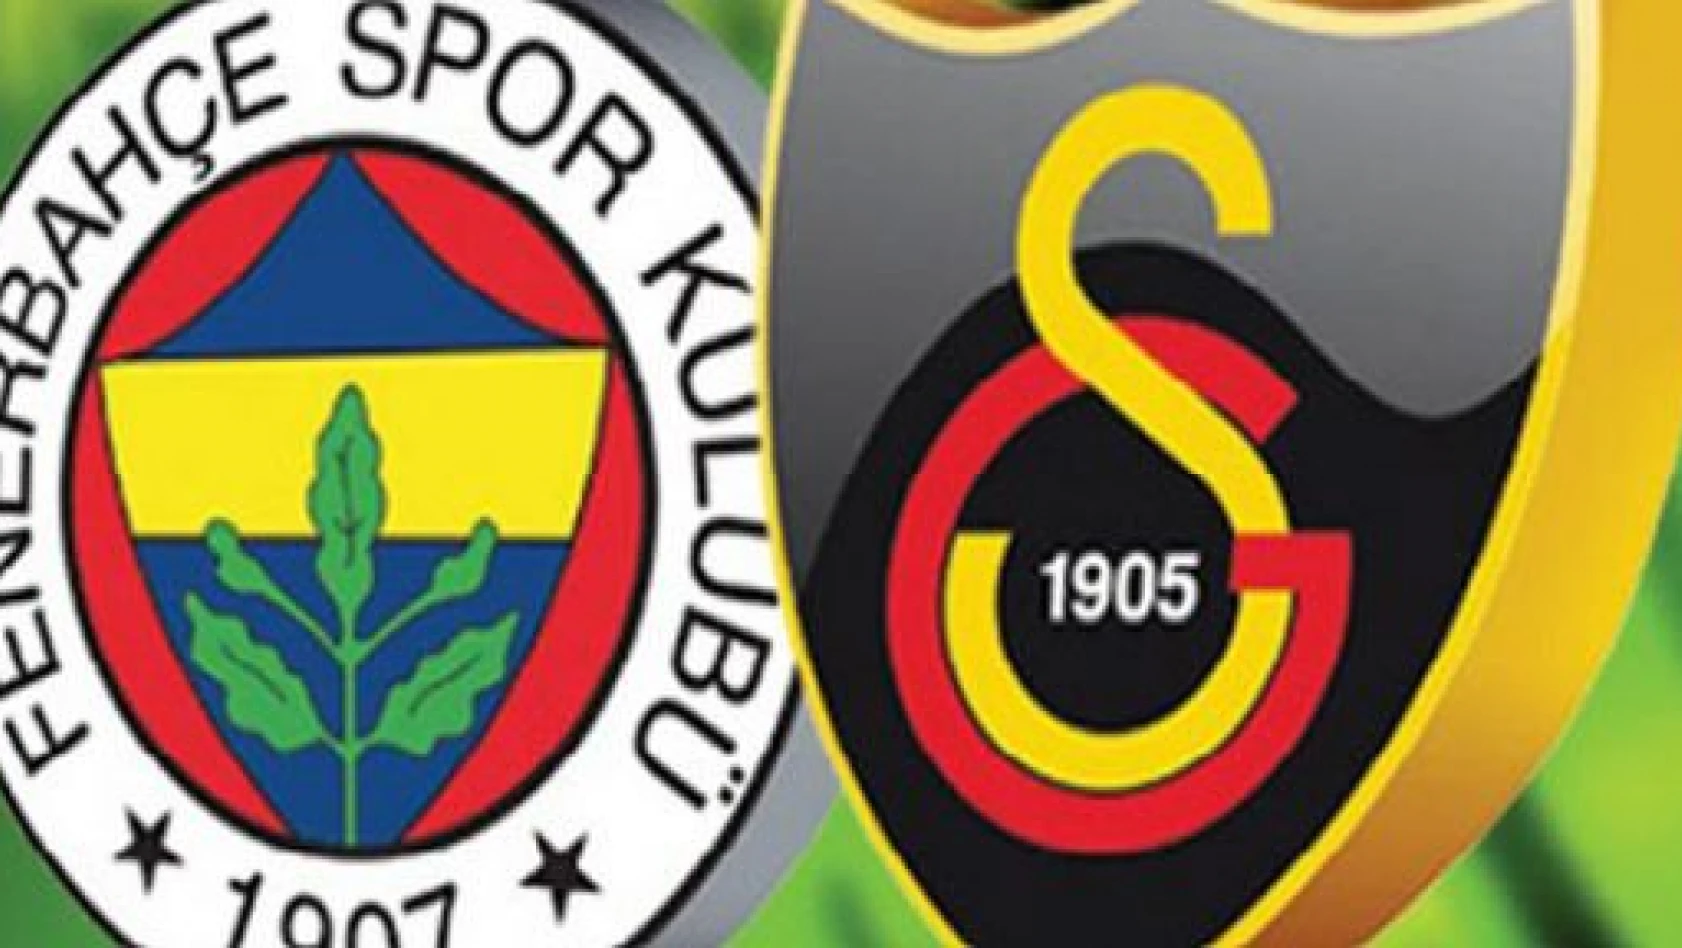 TFF Süper Kupa'nın sahibi Fenerbahçe'yi 1-0 yenen Galatasaray oldu